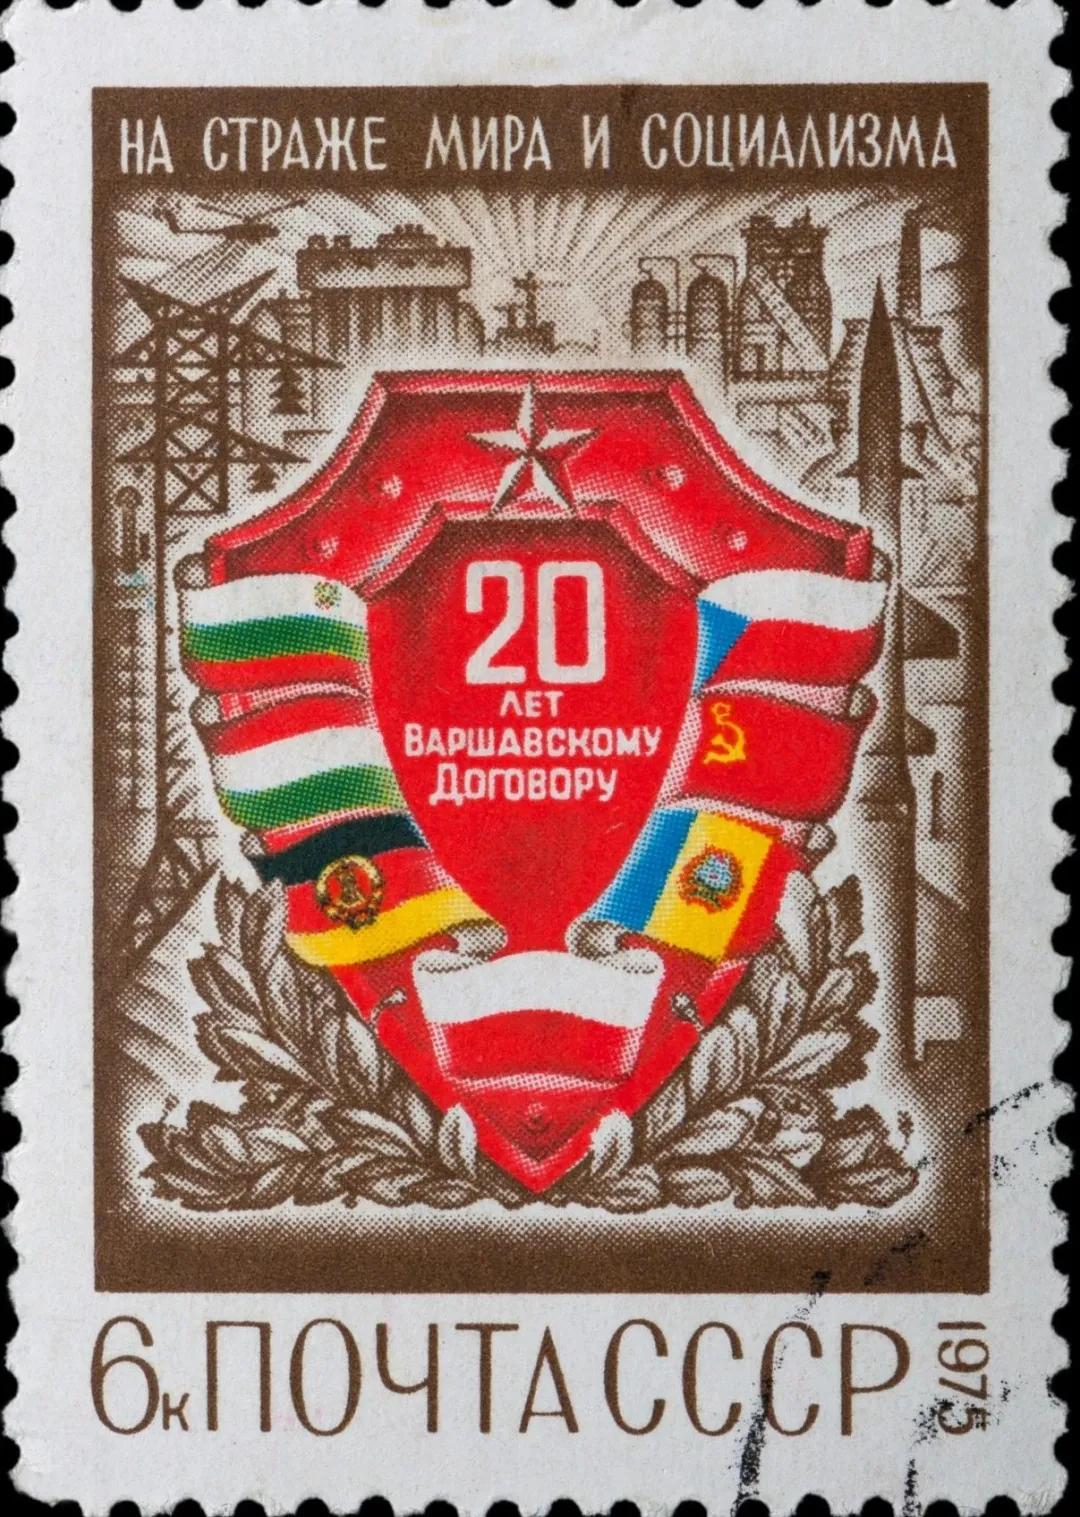 苏联1975年发行的关于华约的邮票end